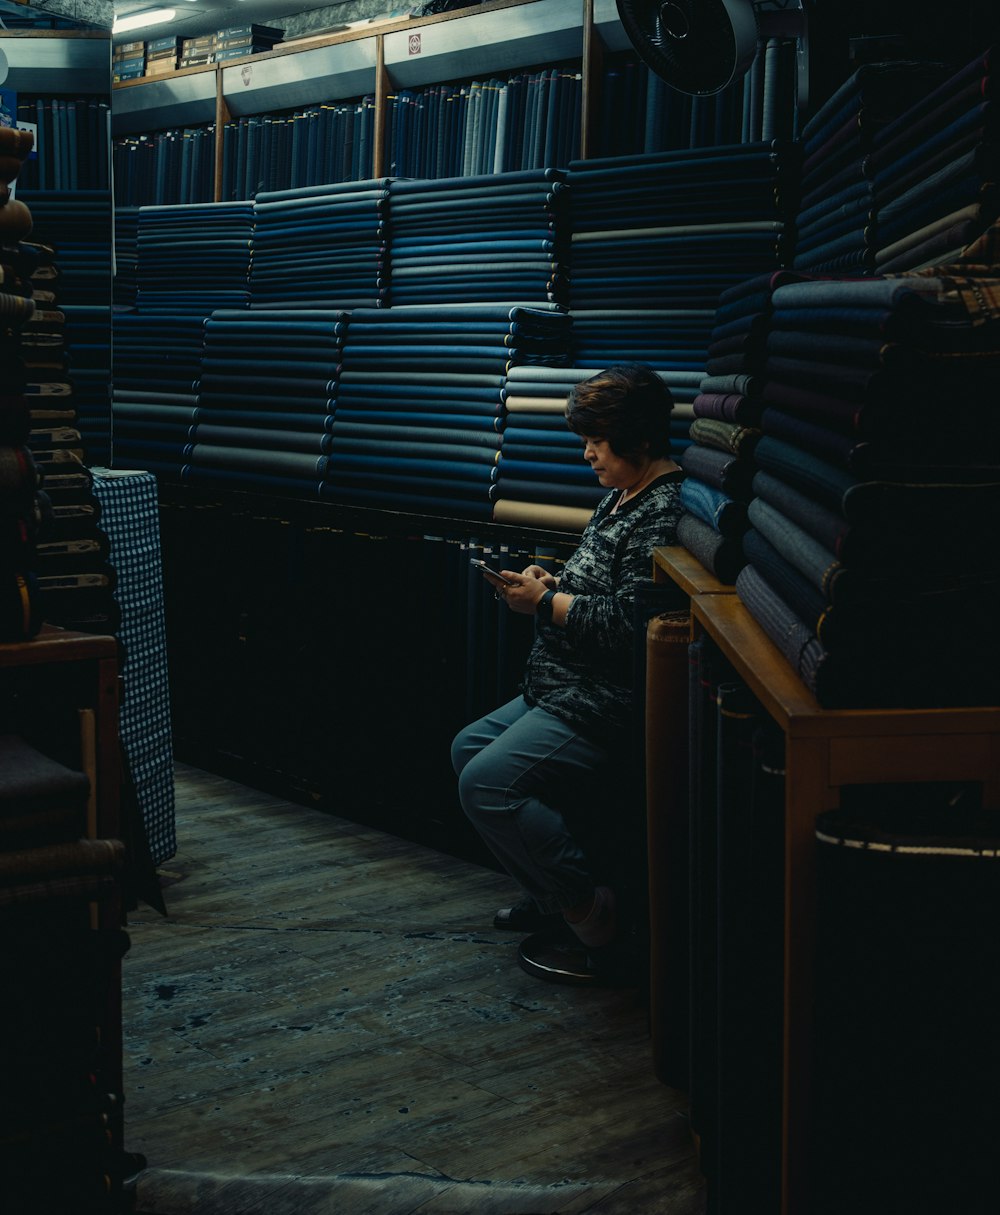 Ein Mann sitzt auf einem Stuhl in einem Raum voller Bücherstapel